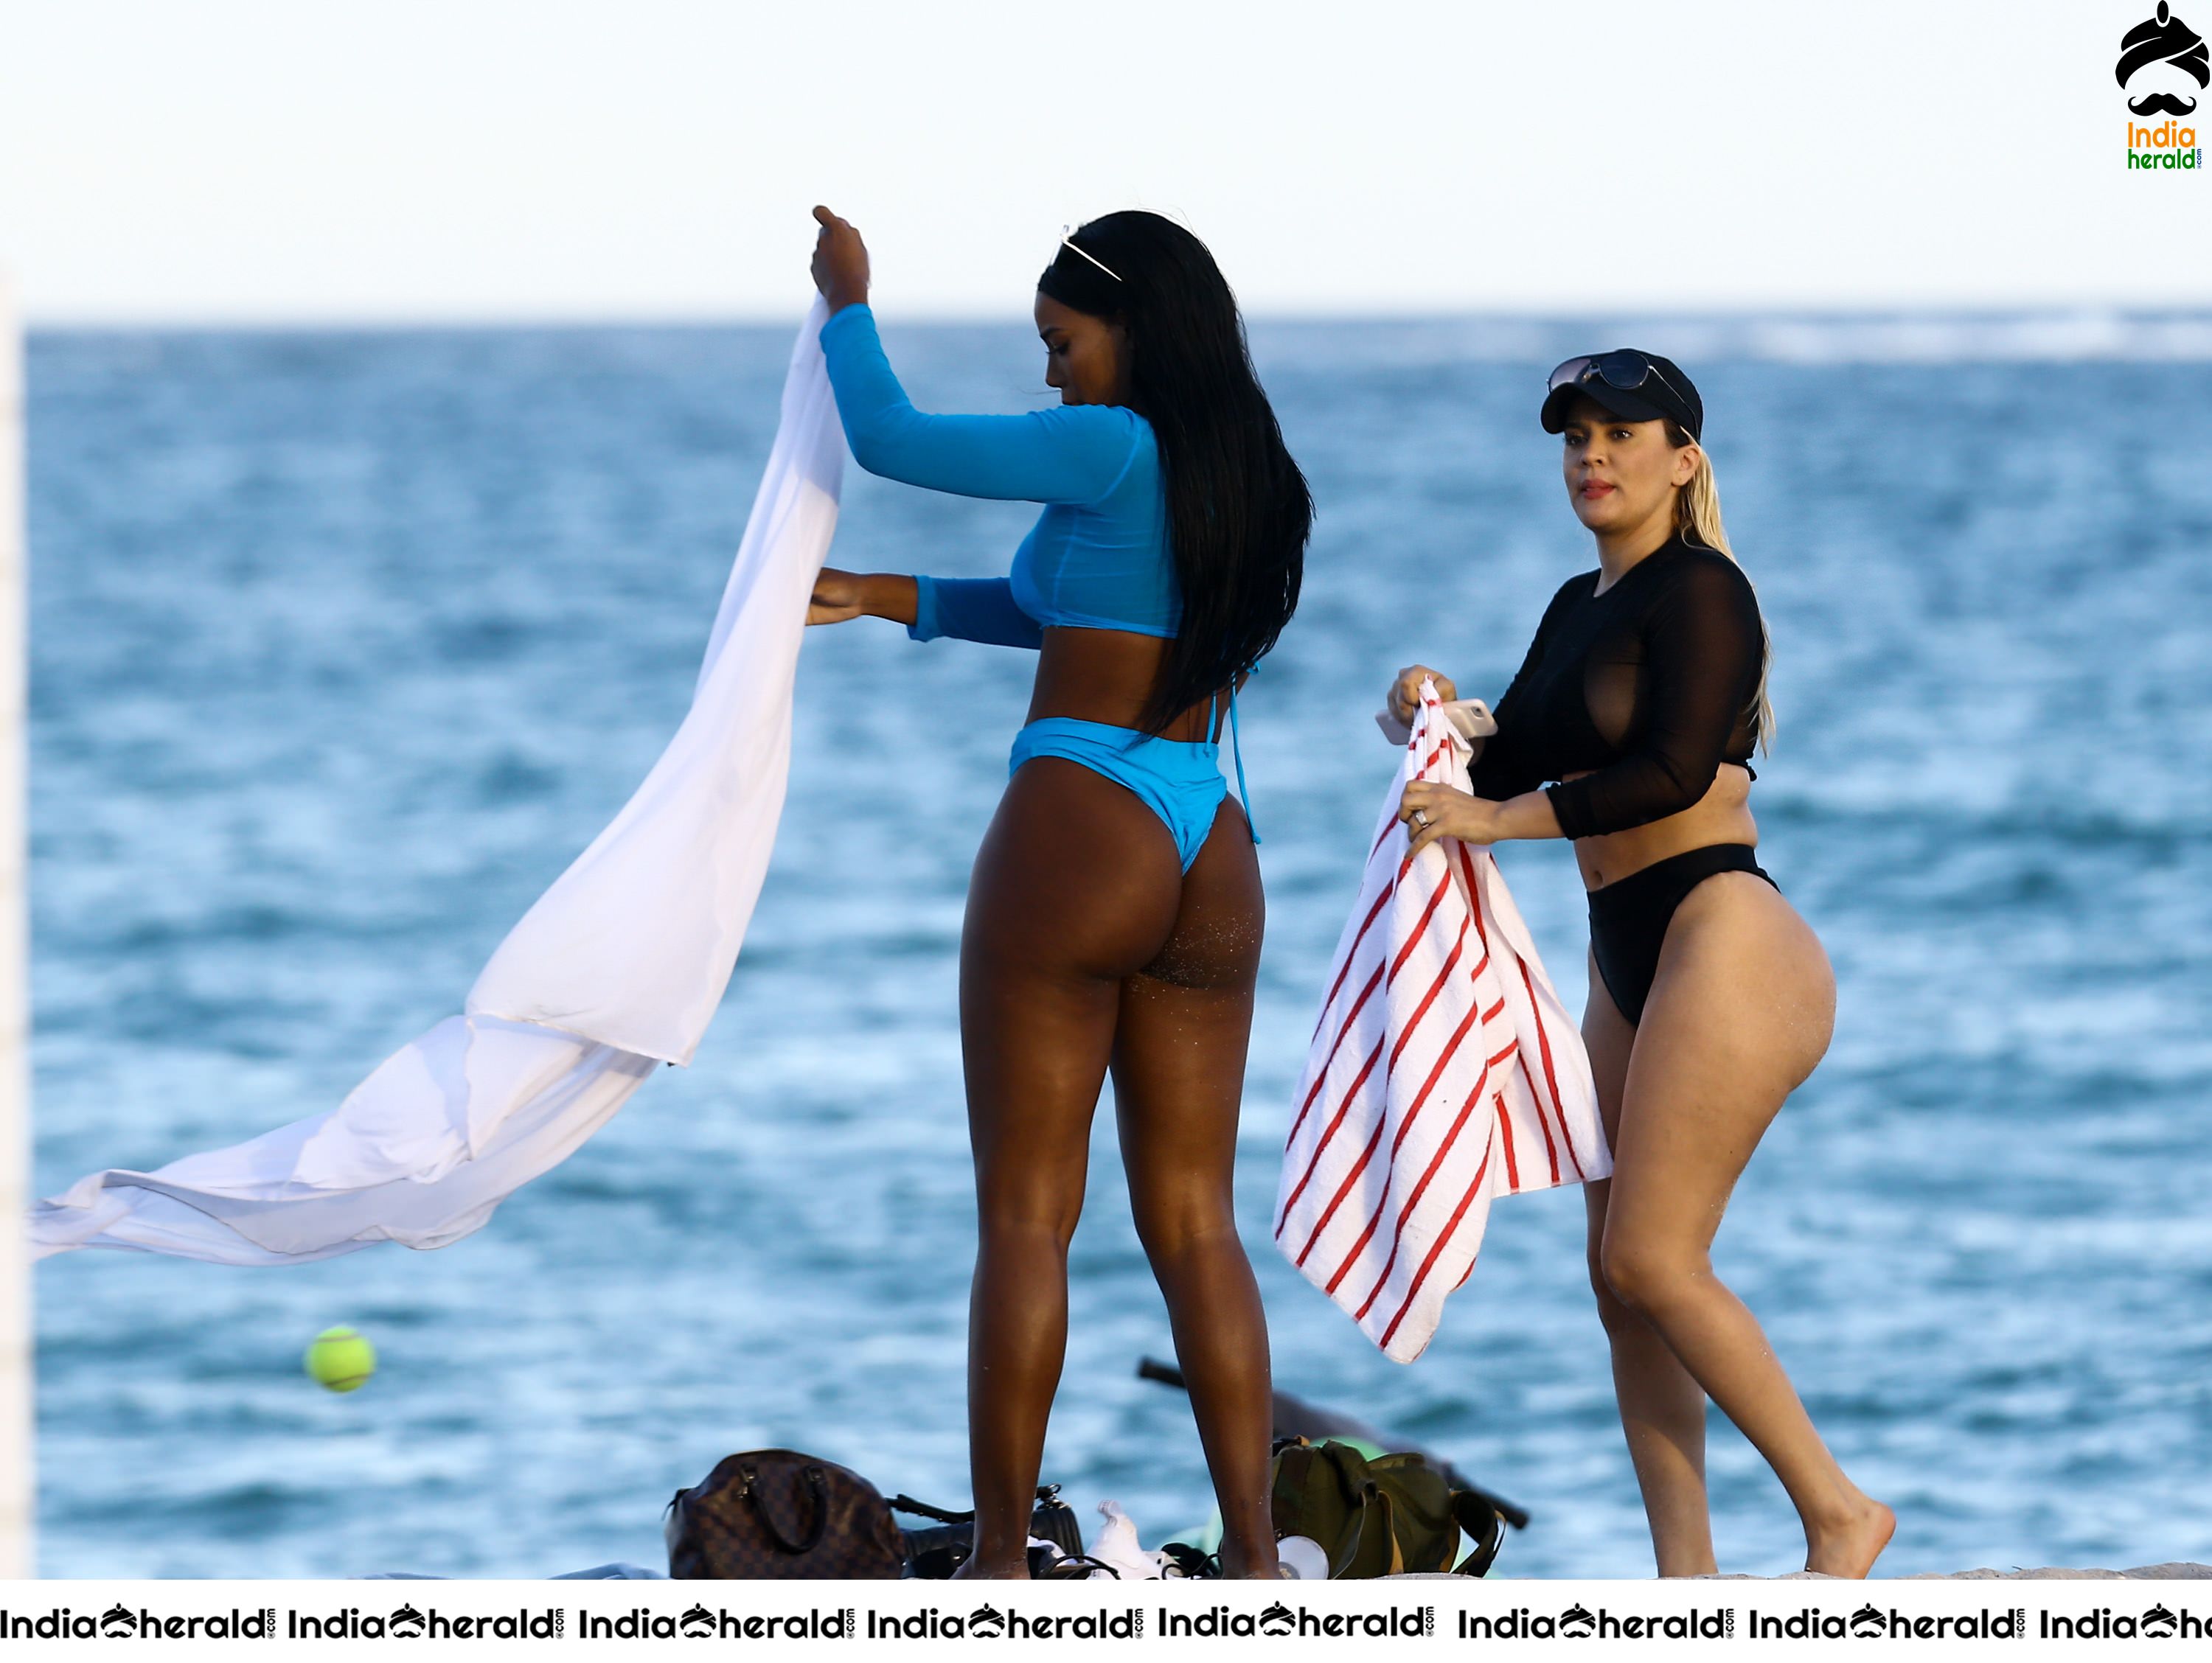 Andrea Gaviria Shows Off Her Bikini Body on The Beach in Miami Set 1